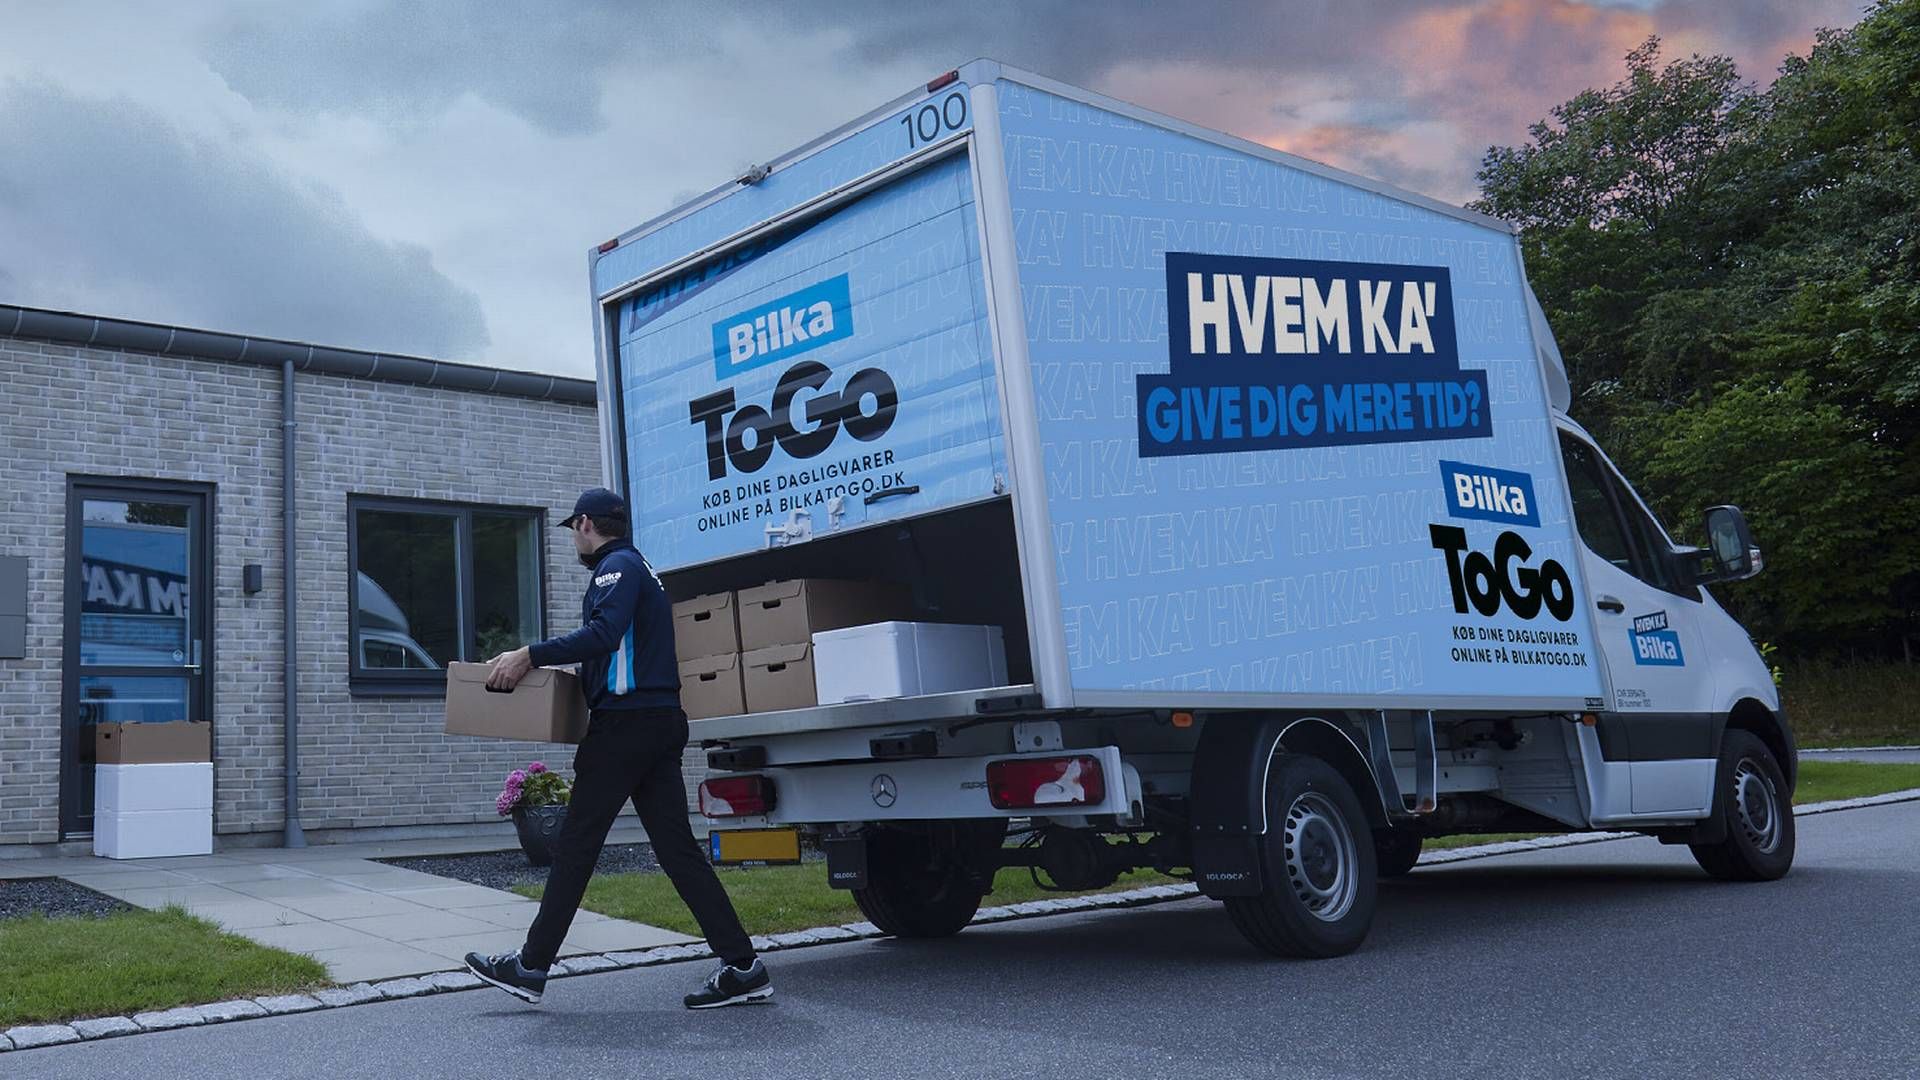 Bilka Togo vil levere varer til kunder i næsten hele landet fra Bilkas varehuse i Aalborg, Aarhus, København, Odense og Trekantområdet. | Foto: PR/Salling Group